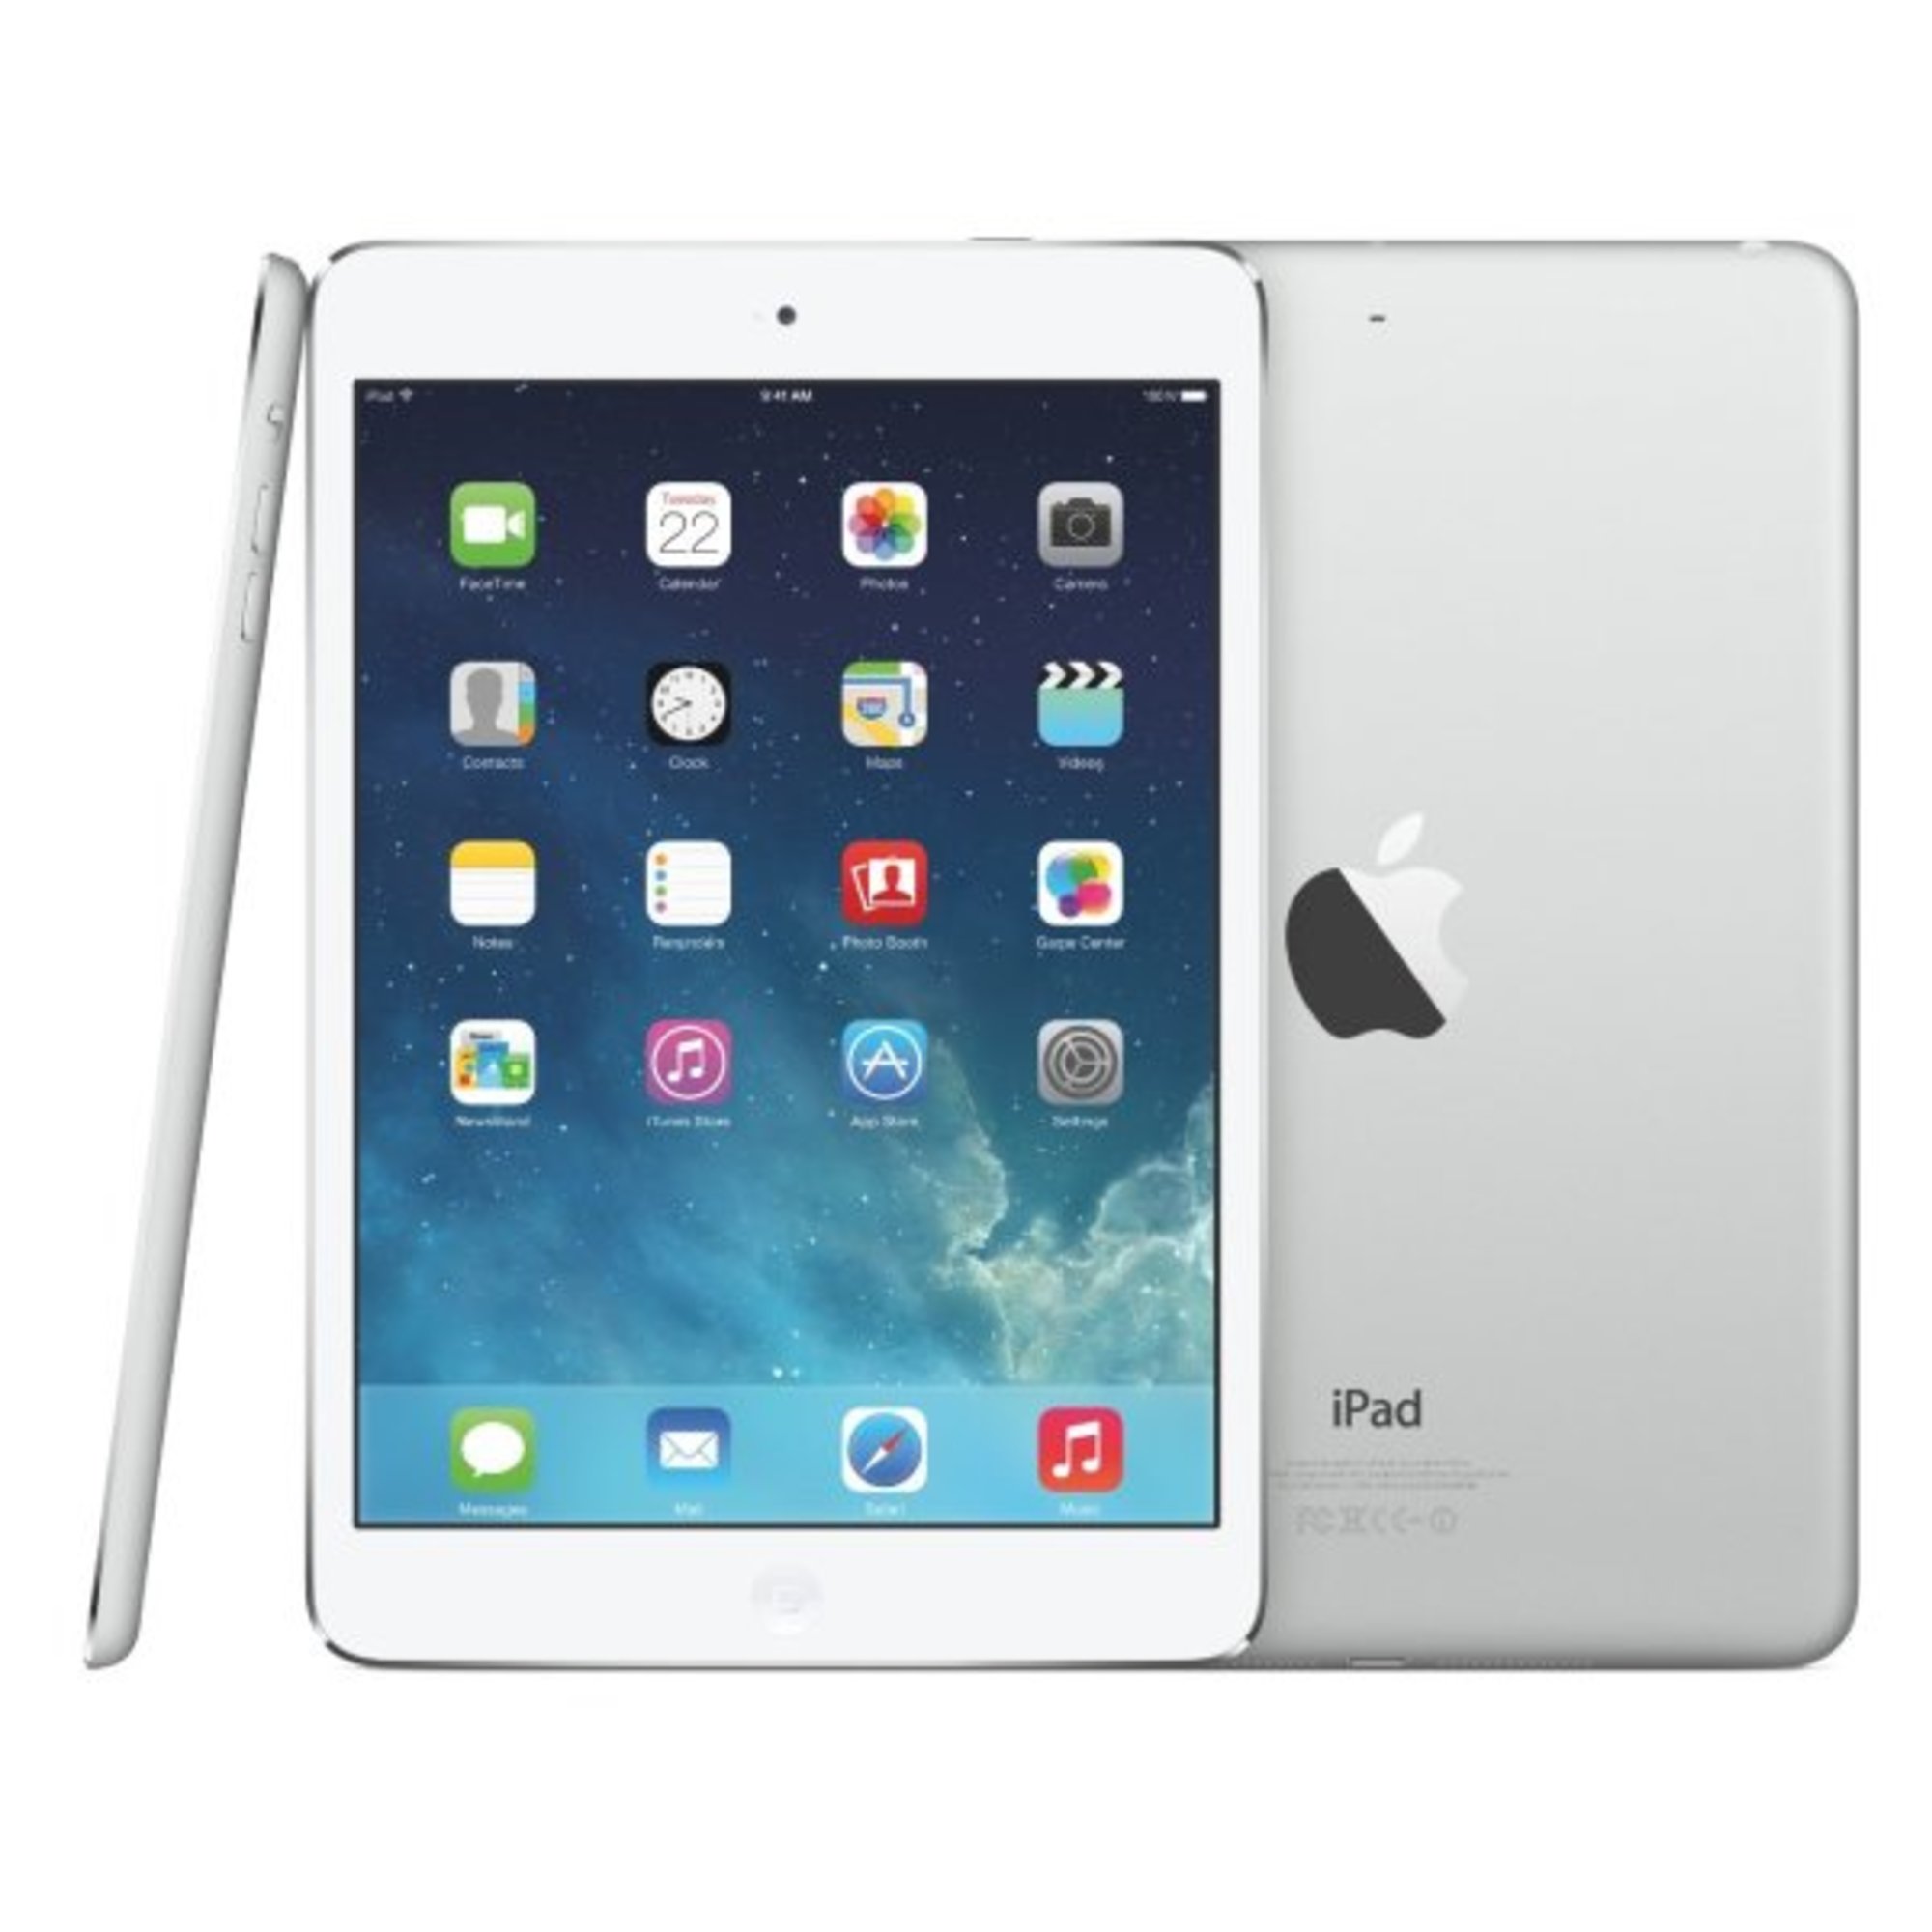 Restored Apple iPad Mini 2 32GB (ME280LL/A) with Retina Display Wi-Fi  Tablet - White/Silver (Refurbished) - Walmart.com